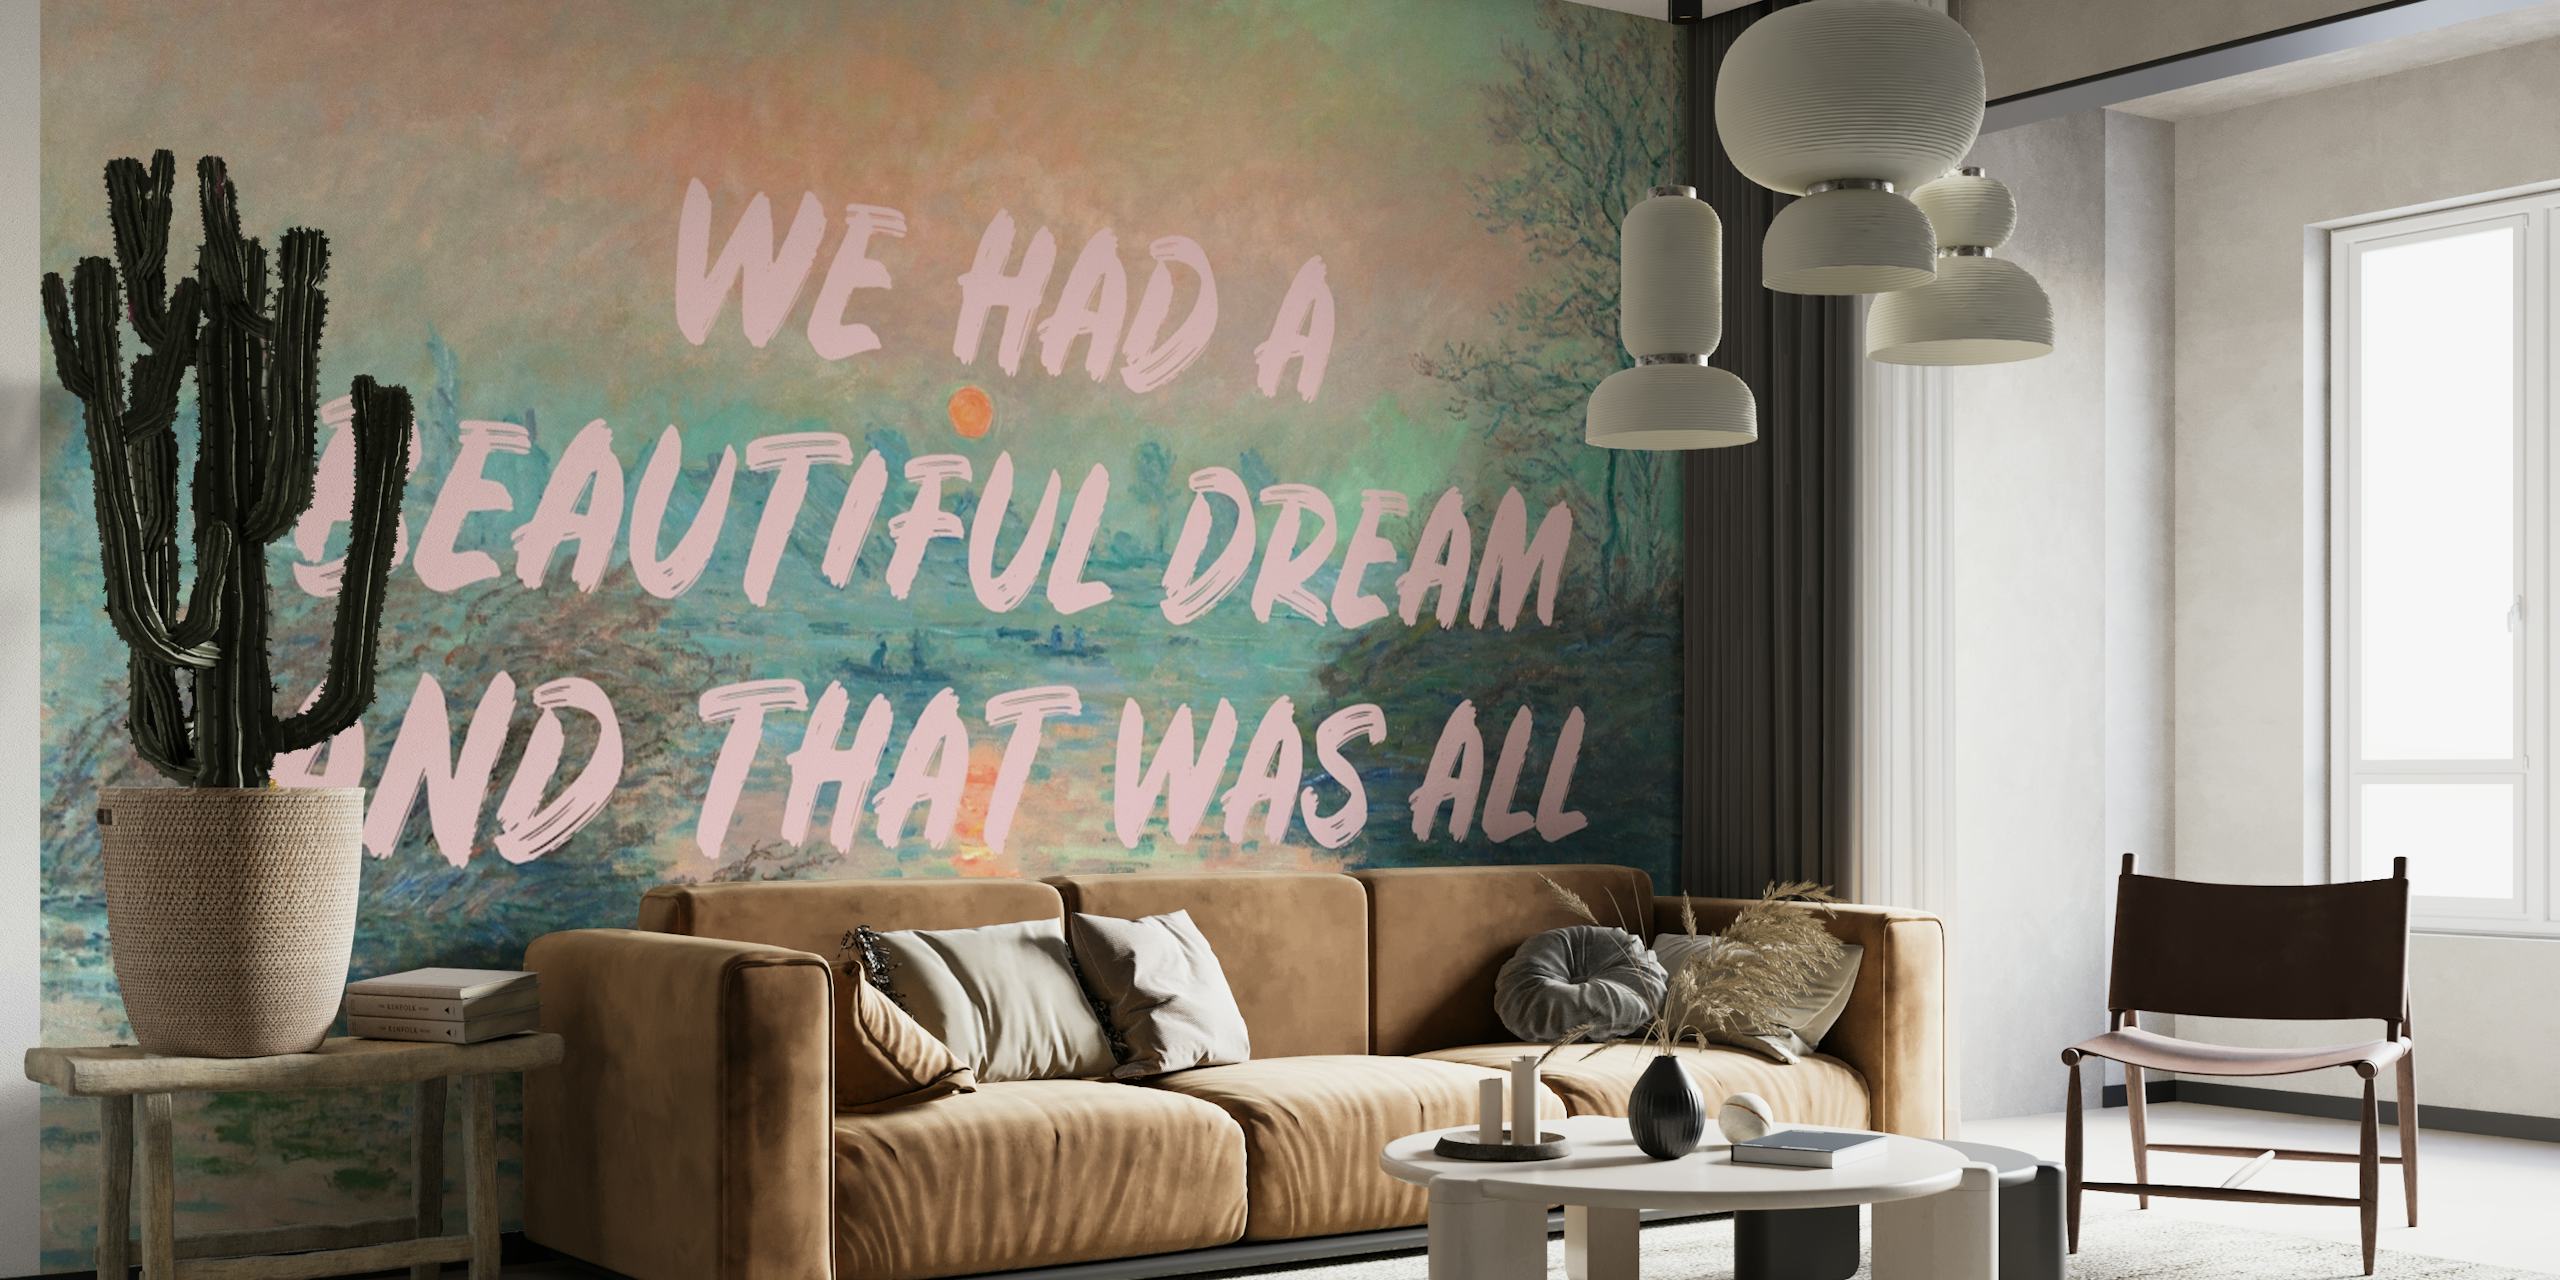 Beautiful Dream Altered Art papel pintado